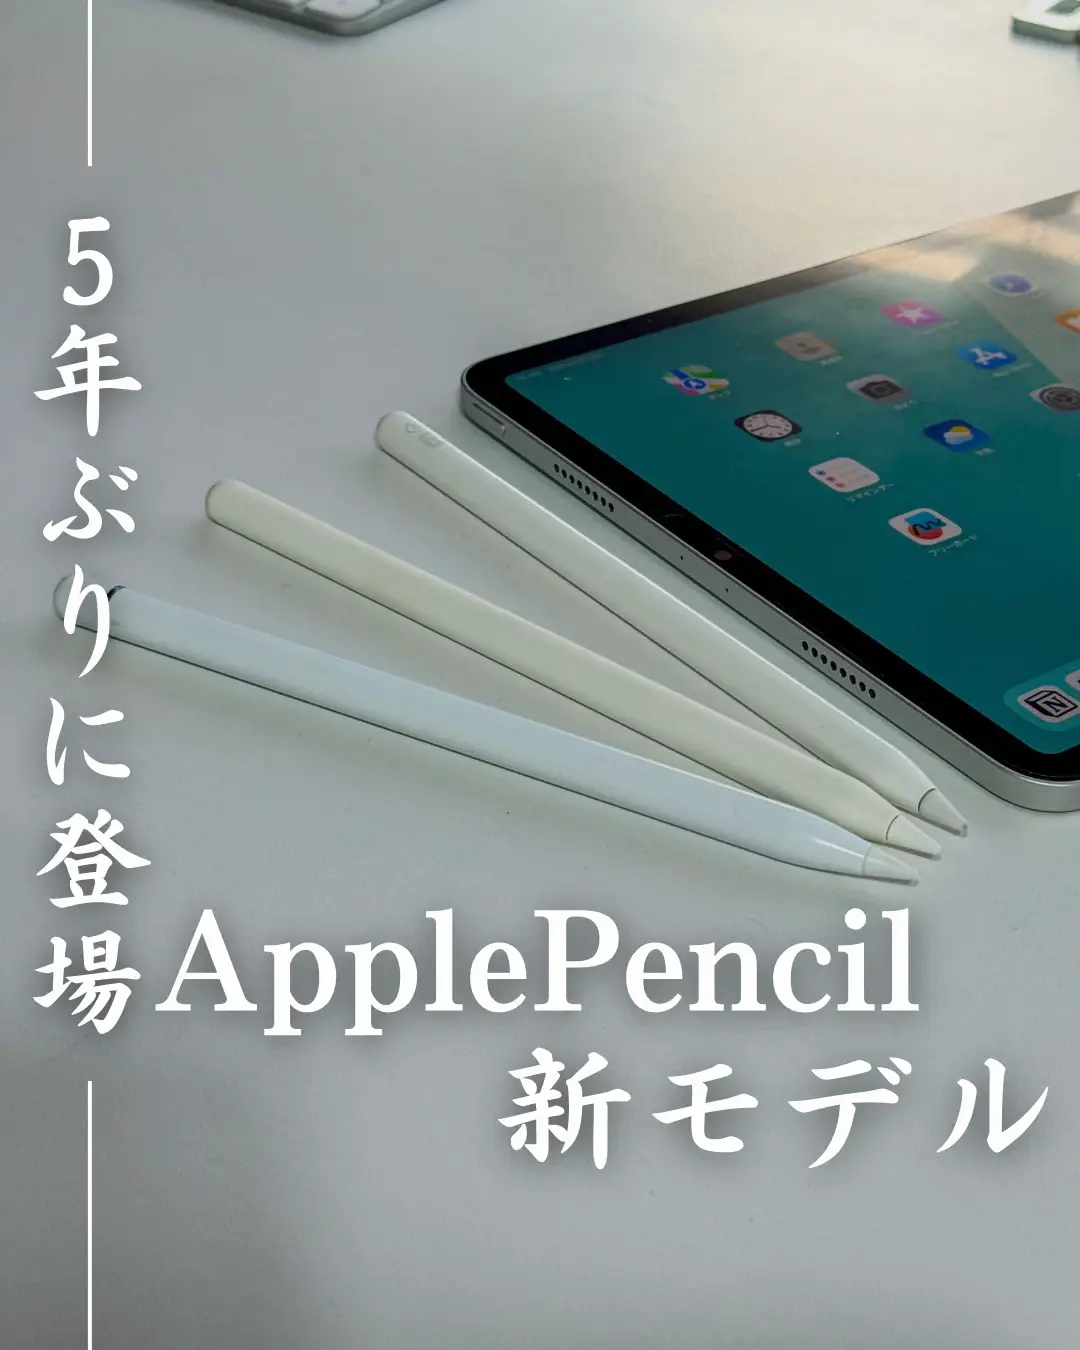 Apple Pencil 第2世代 - 筆圧感知機能が壊れています - PC/タブレット